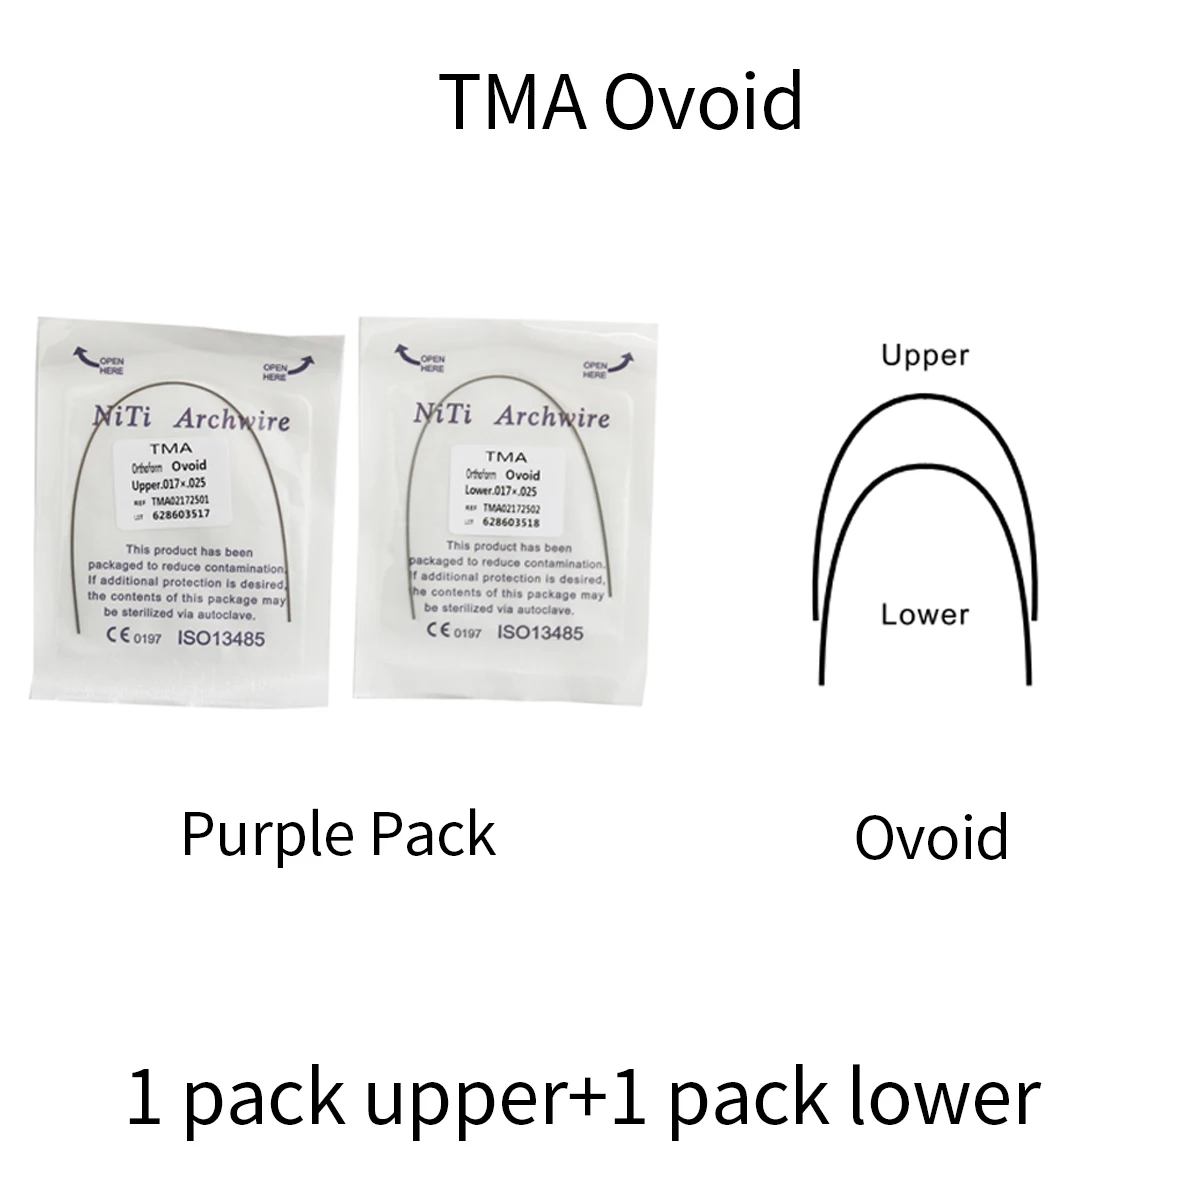 2 упаковки 2шт Яйцевидной проволоки TMA Ti-Mo для брекет-систем Фиолетовая упаковка (1 Верхняя + 1 Нижняя)